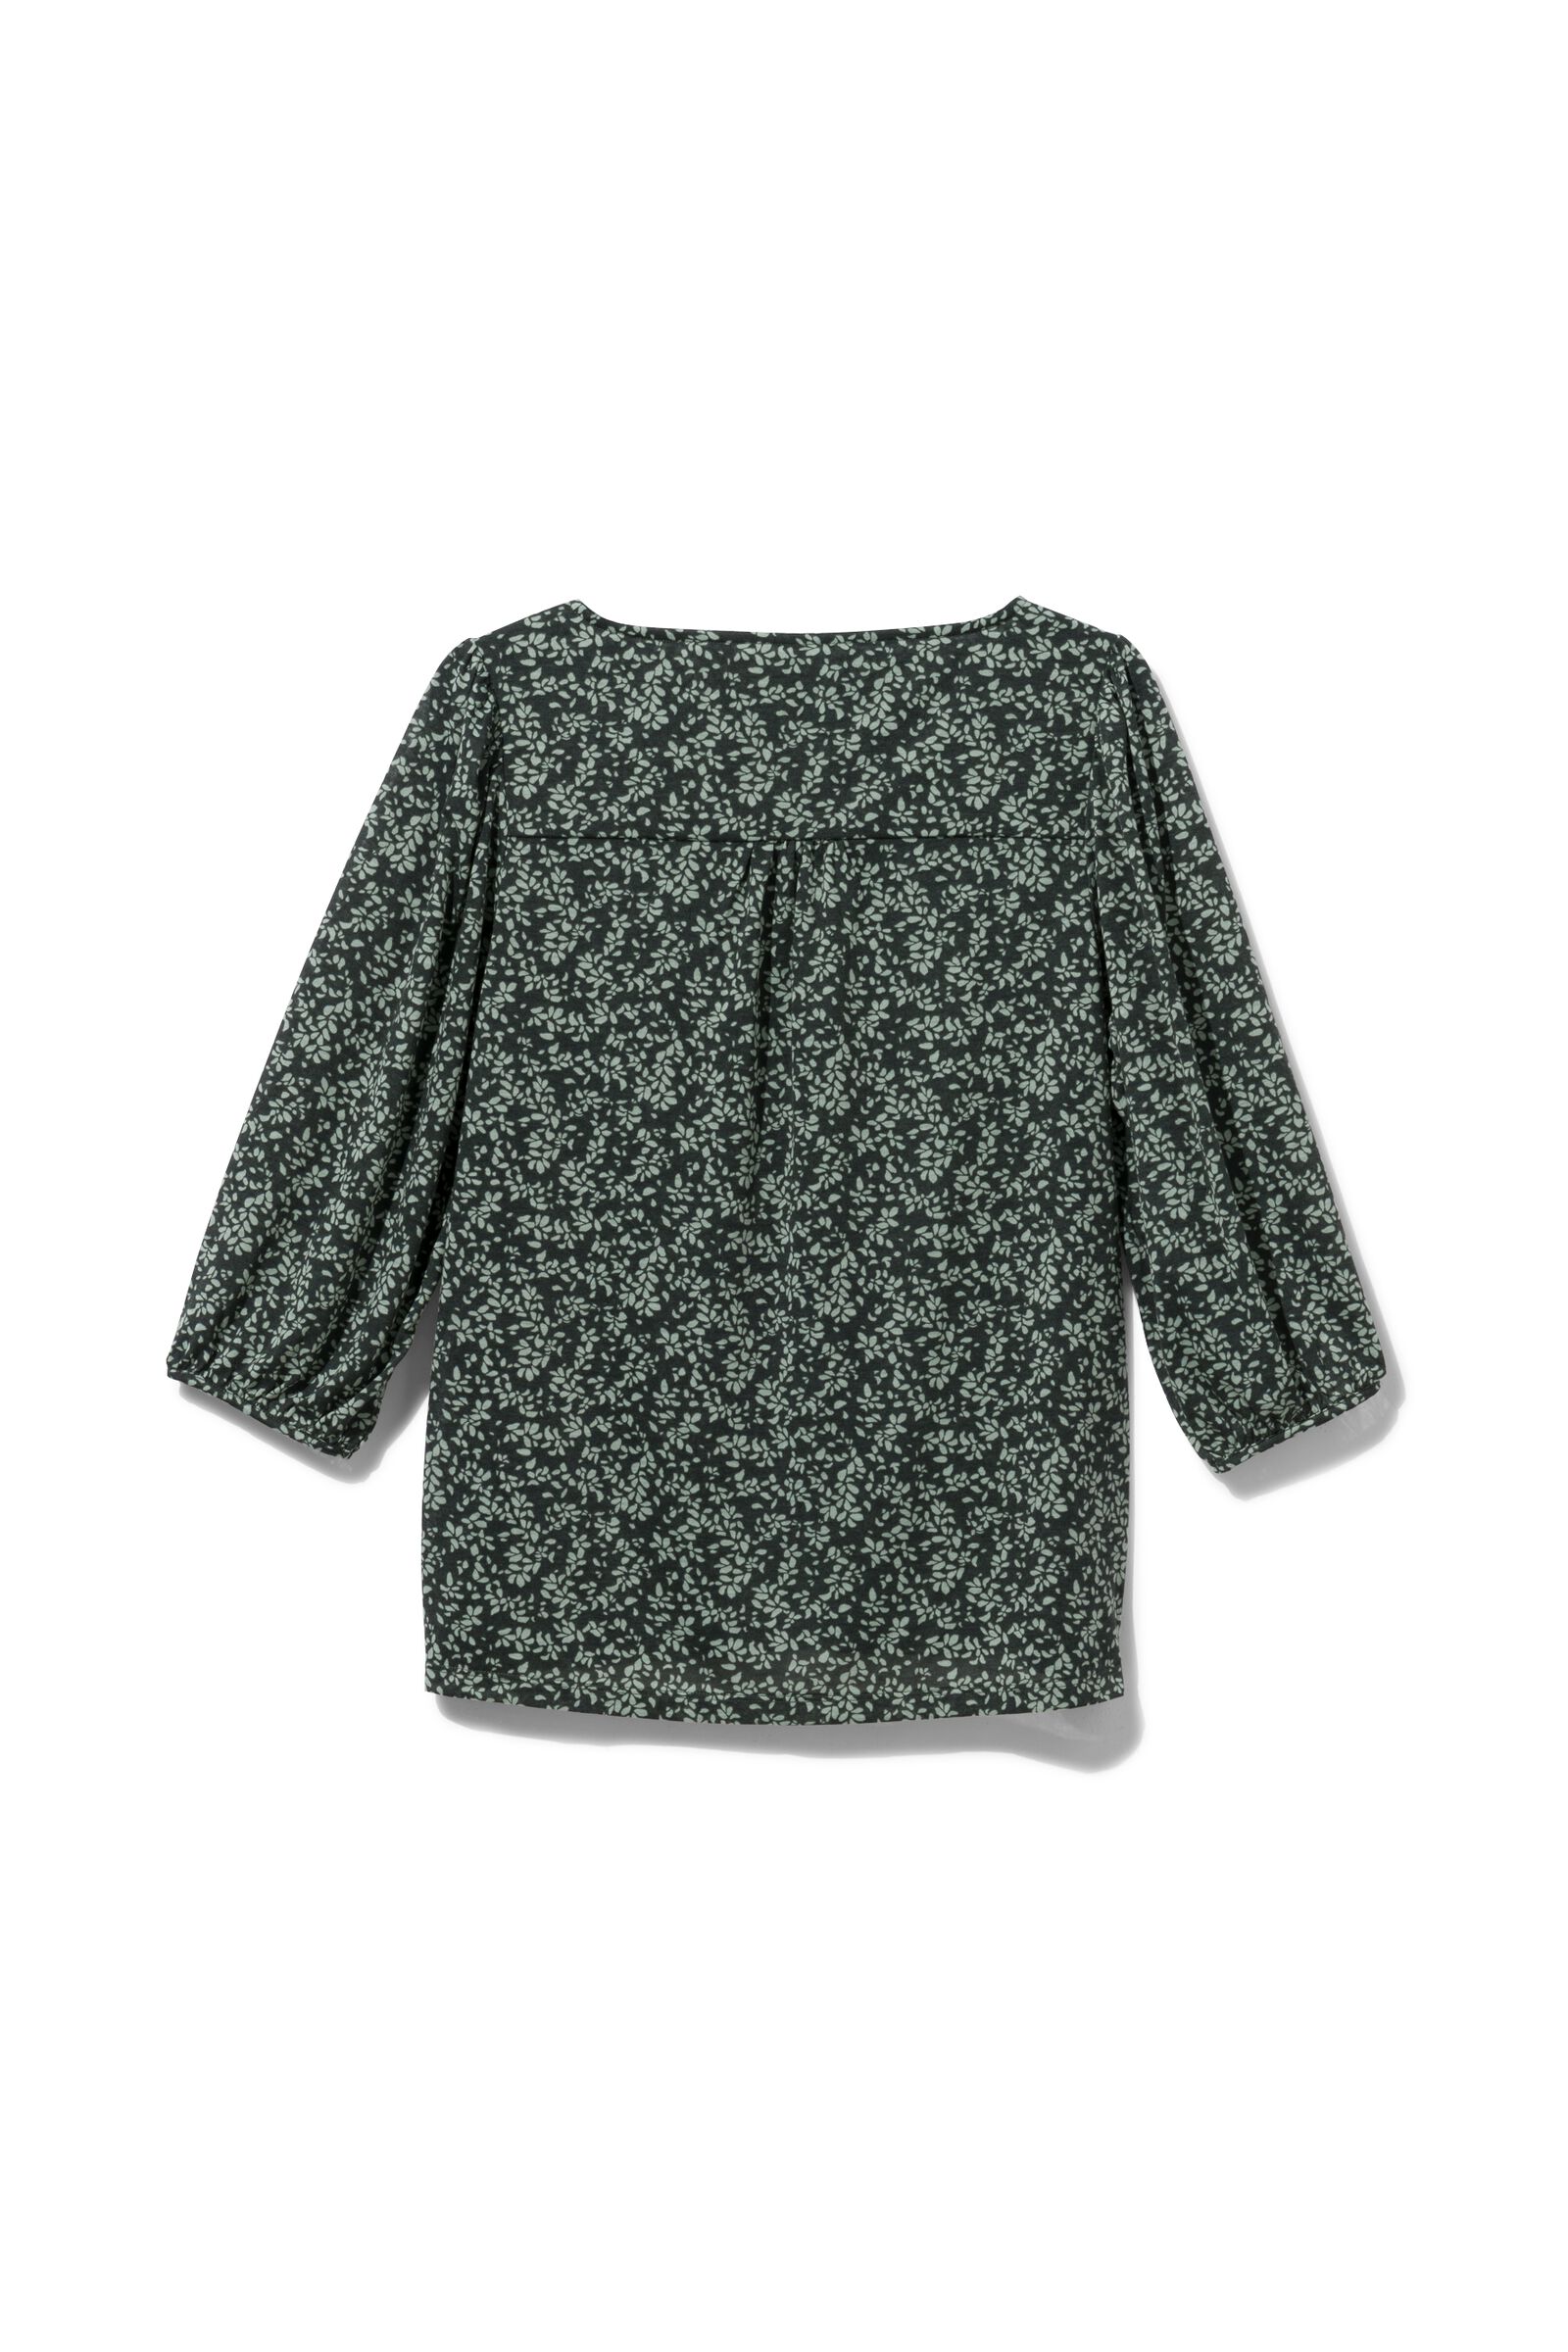 Damen-Shirt Cateau grün - 1000029960 - HEMA